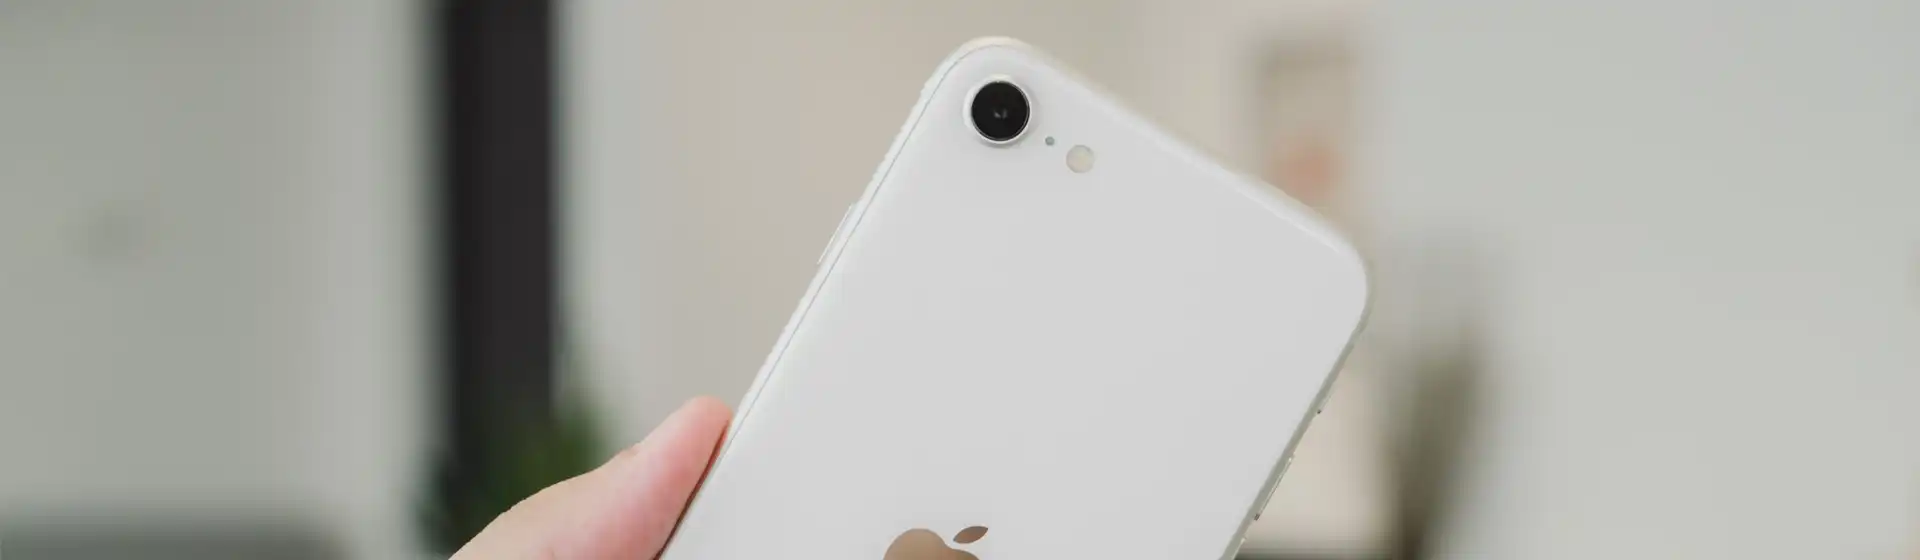 iPhone 13 é bom? Veja ficha técnica e preço do celular Apple - DeUmZoom